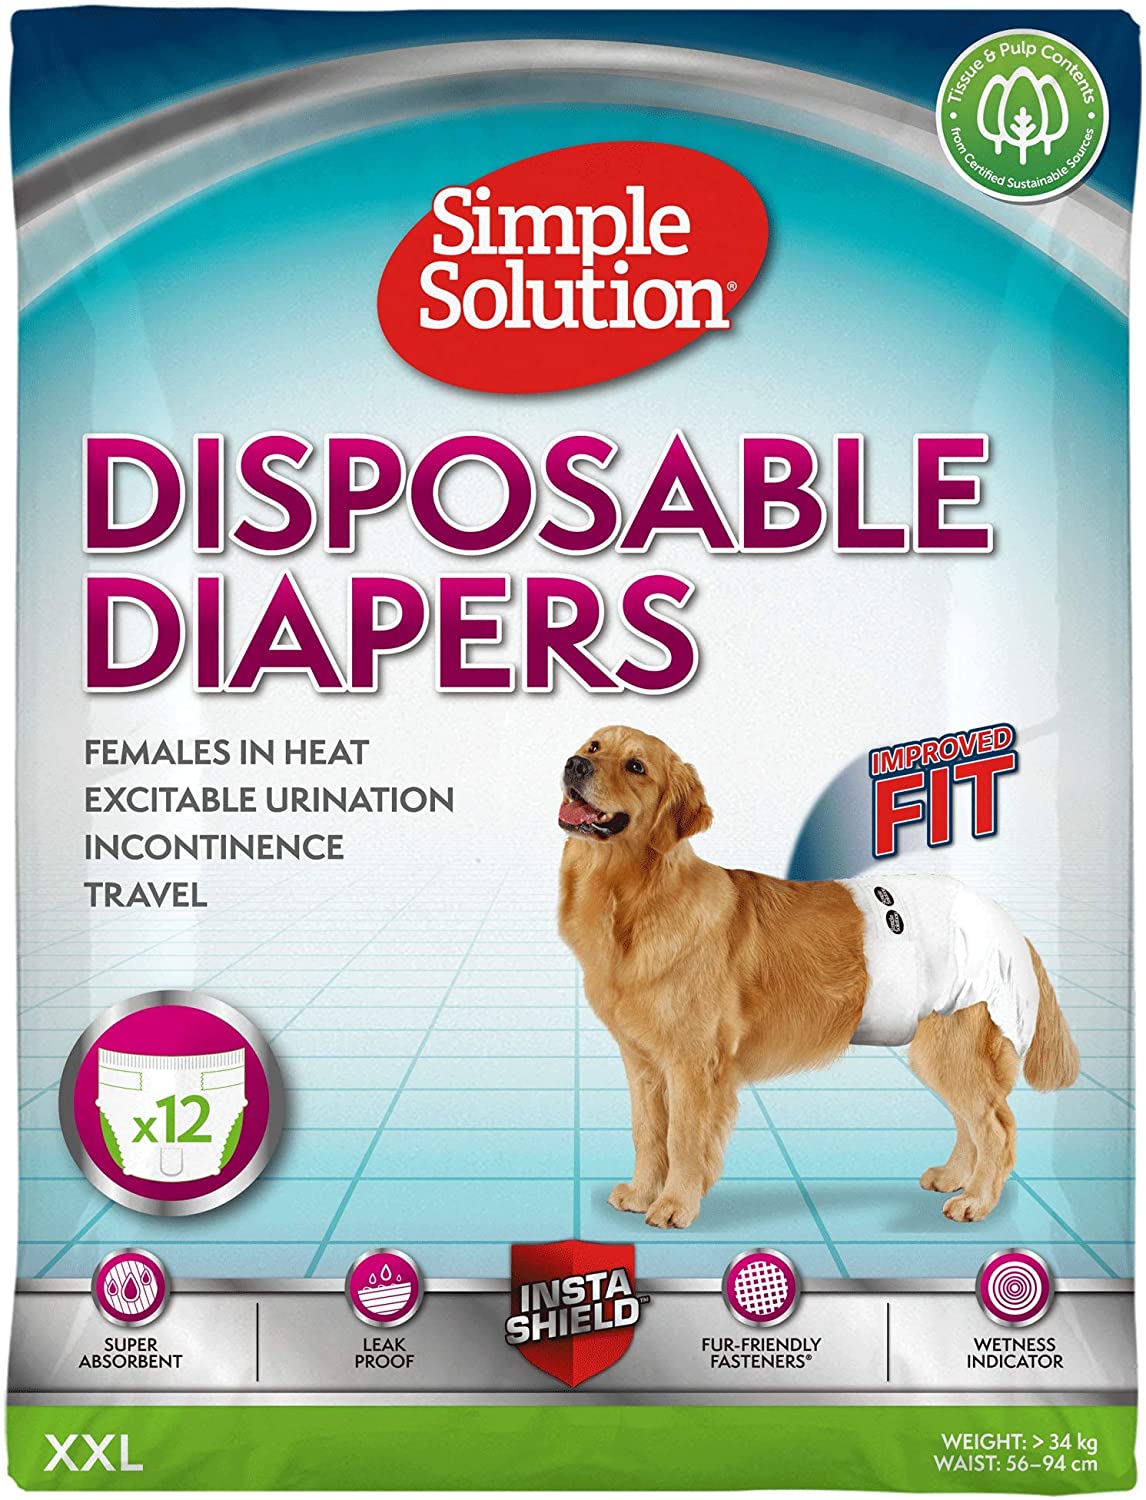  Simple Solution Disposable Pañales para perros, blanco, XXL - paquete de 12 